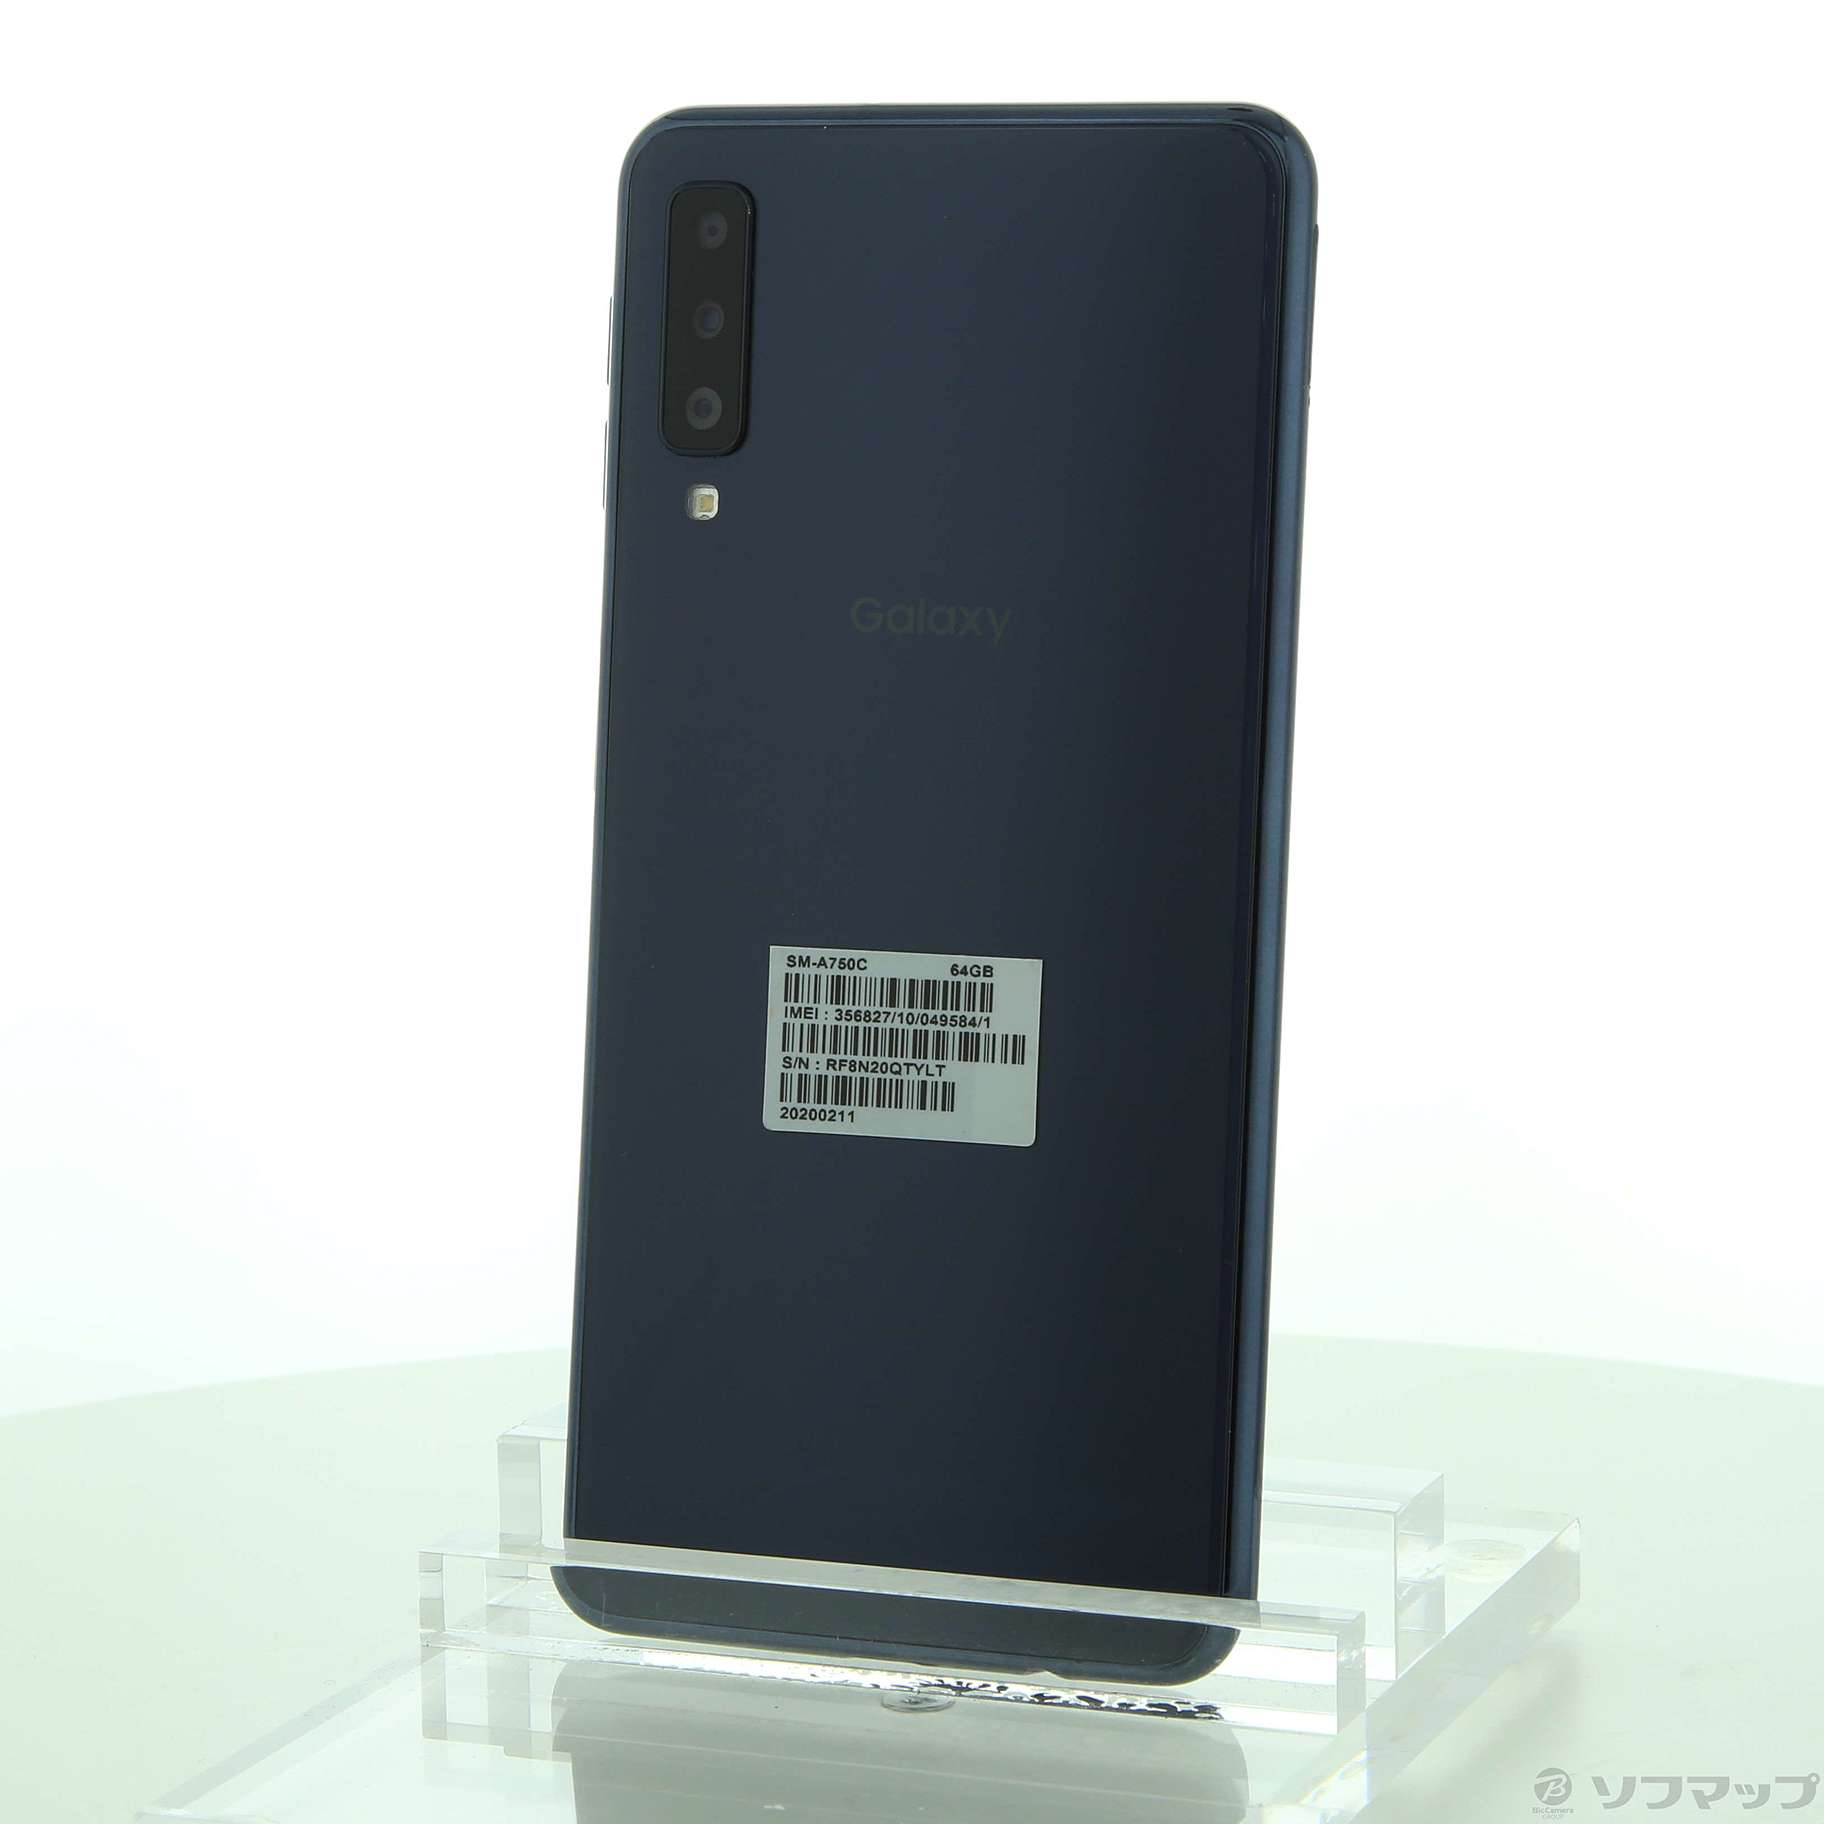 有NFCSAMSUNG Galaxy A7 ブラック SM-A750C SIMフリー